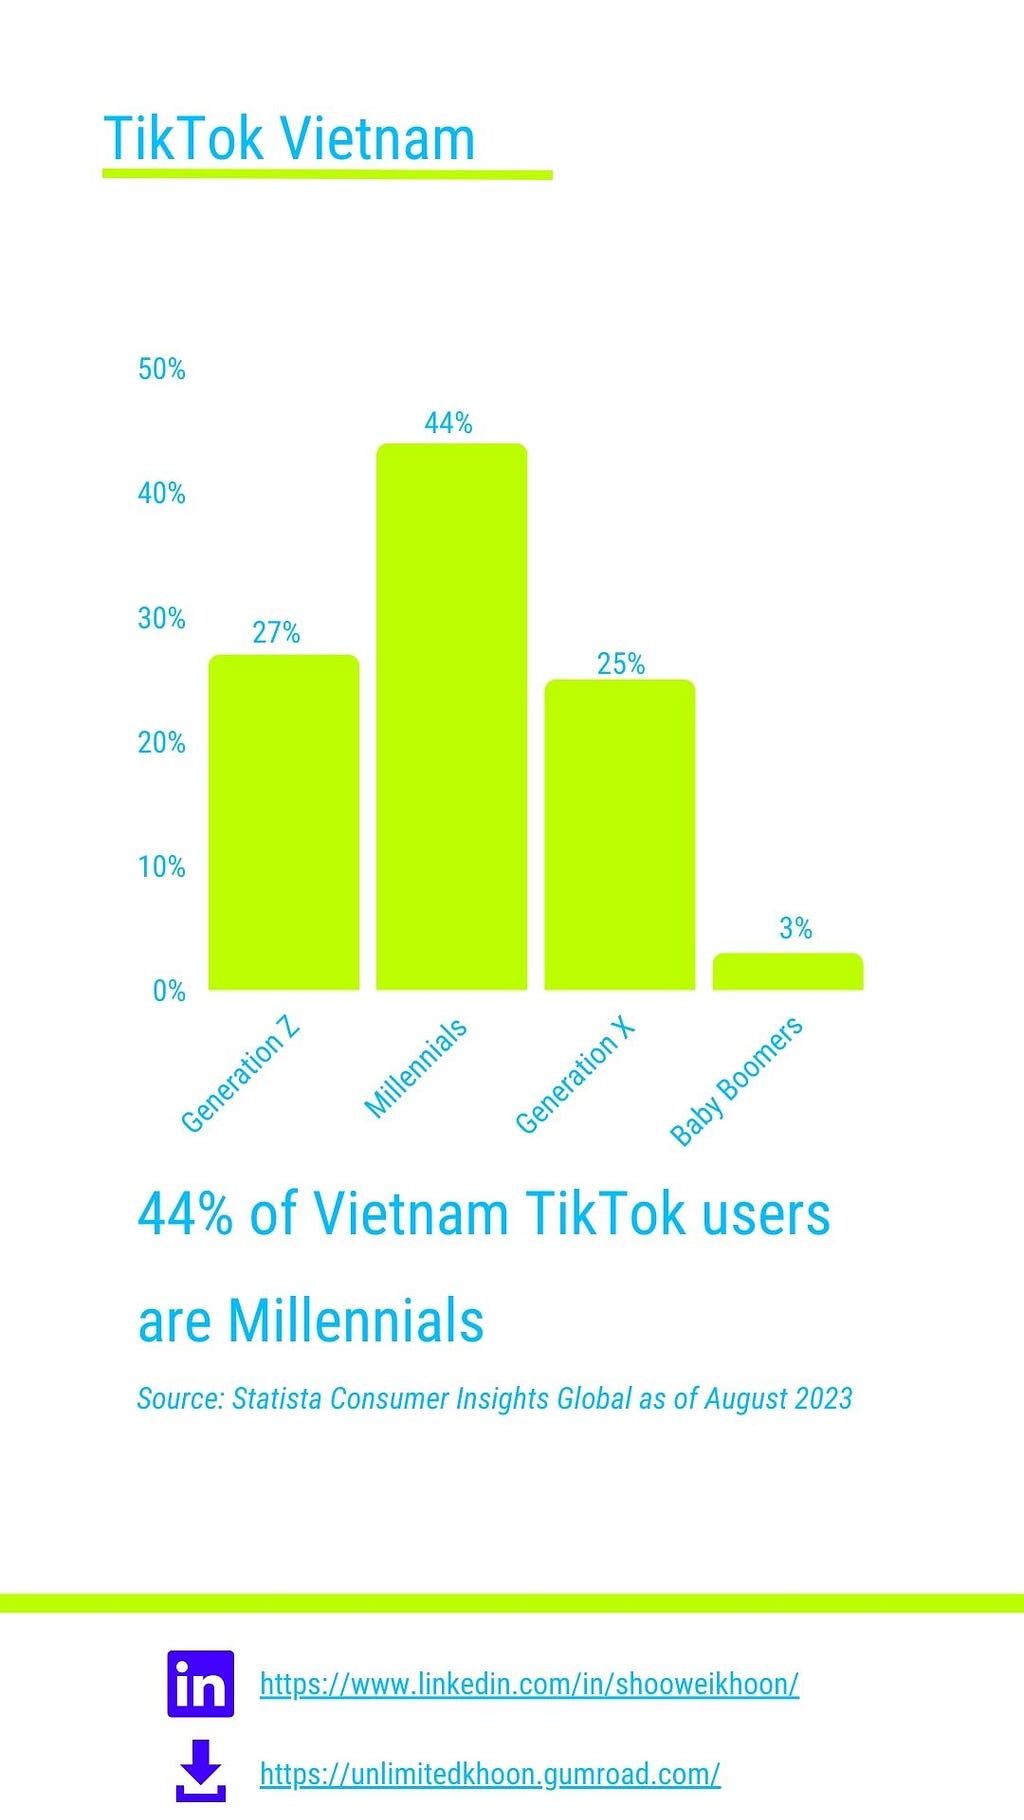 44% of Vietnam TikTok users are Millennials